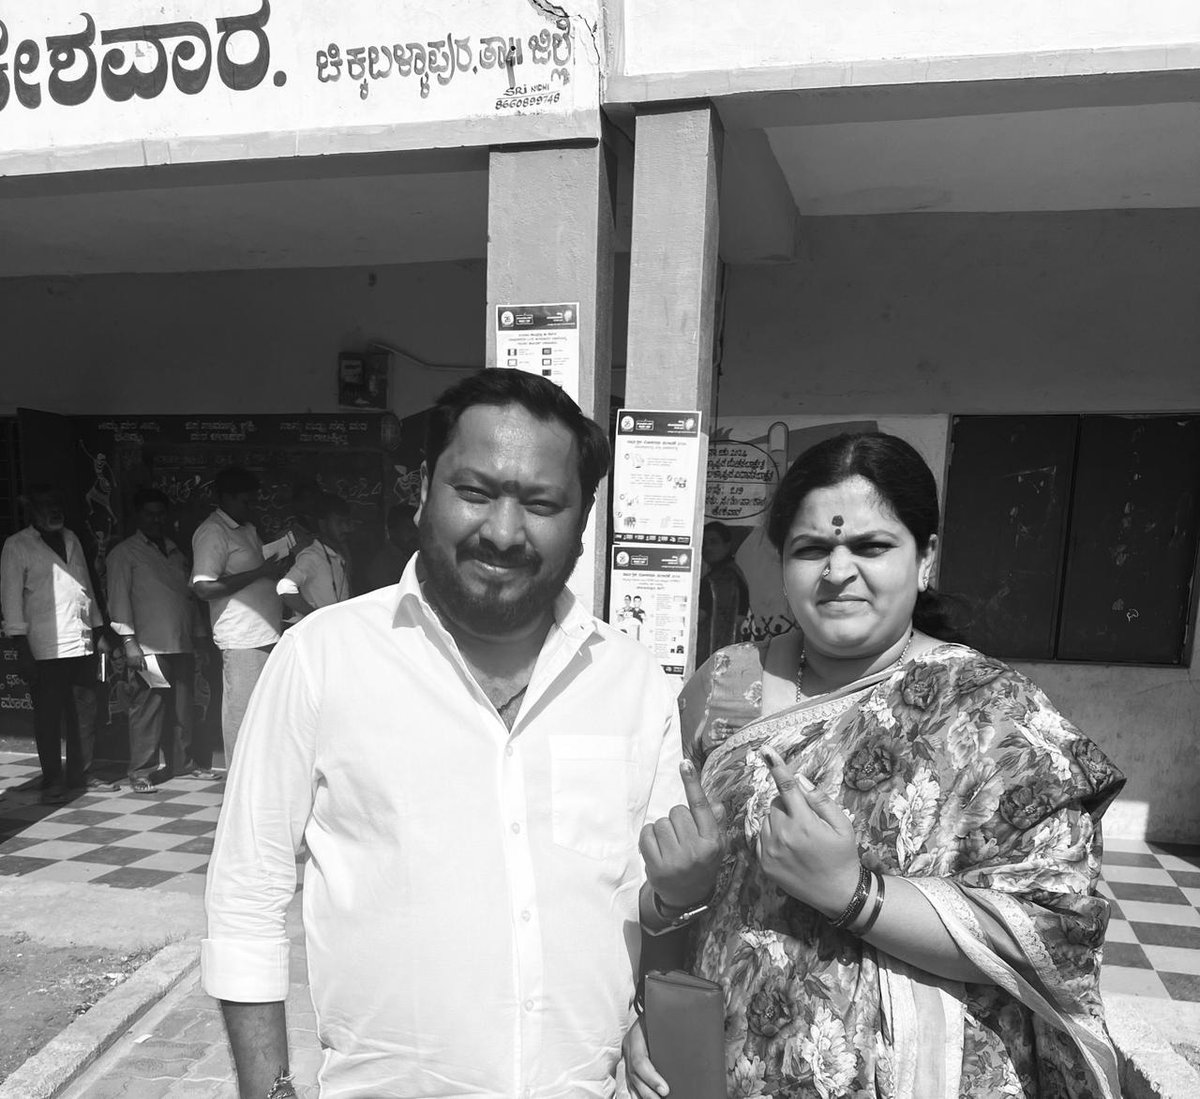 ನನ್ನ ಹುಟ್ಟೂರಿನಲ್ಲಿ ಇಂದು ಪತ್ನಿ ಜೊತೆ ಮತ ಚಲಾಯಿಸಿದ್ದೇನೆ. Voted with wife in my hometown today #VoteForINDIA #vote #election2024 #Rchandrumovies #Rchandru